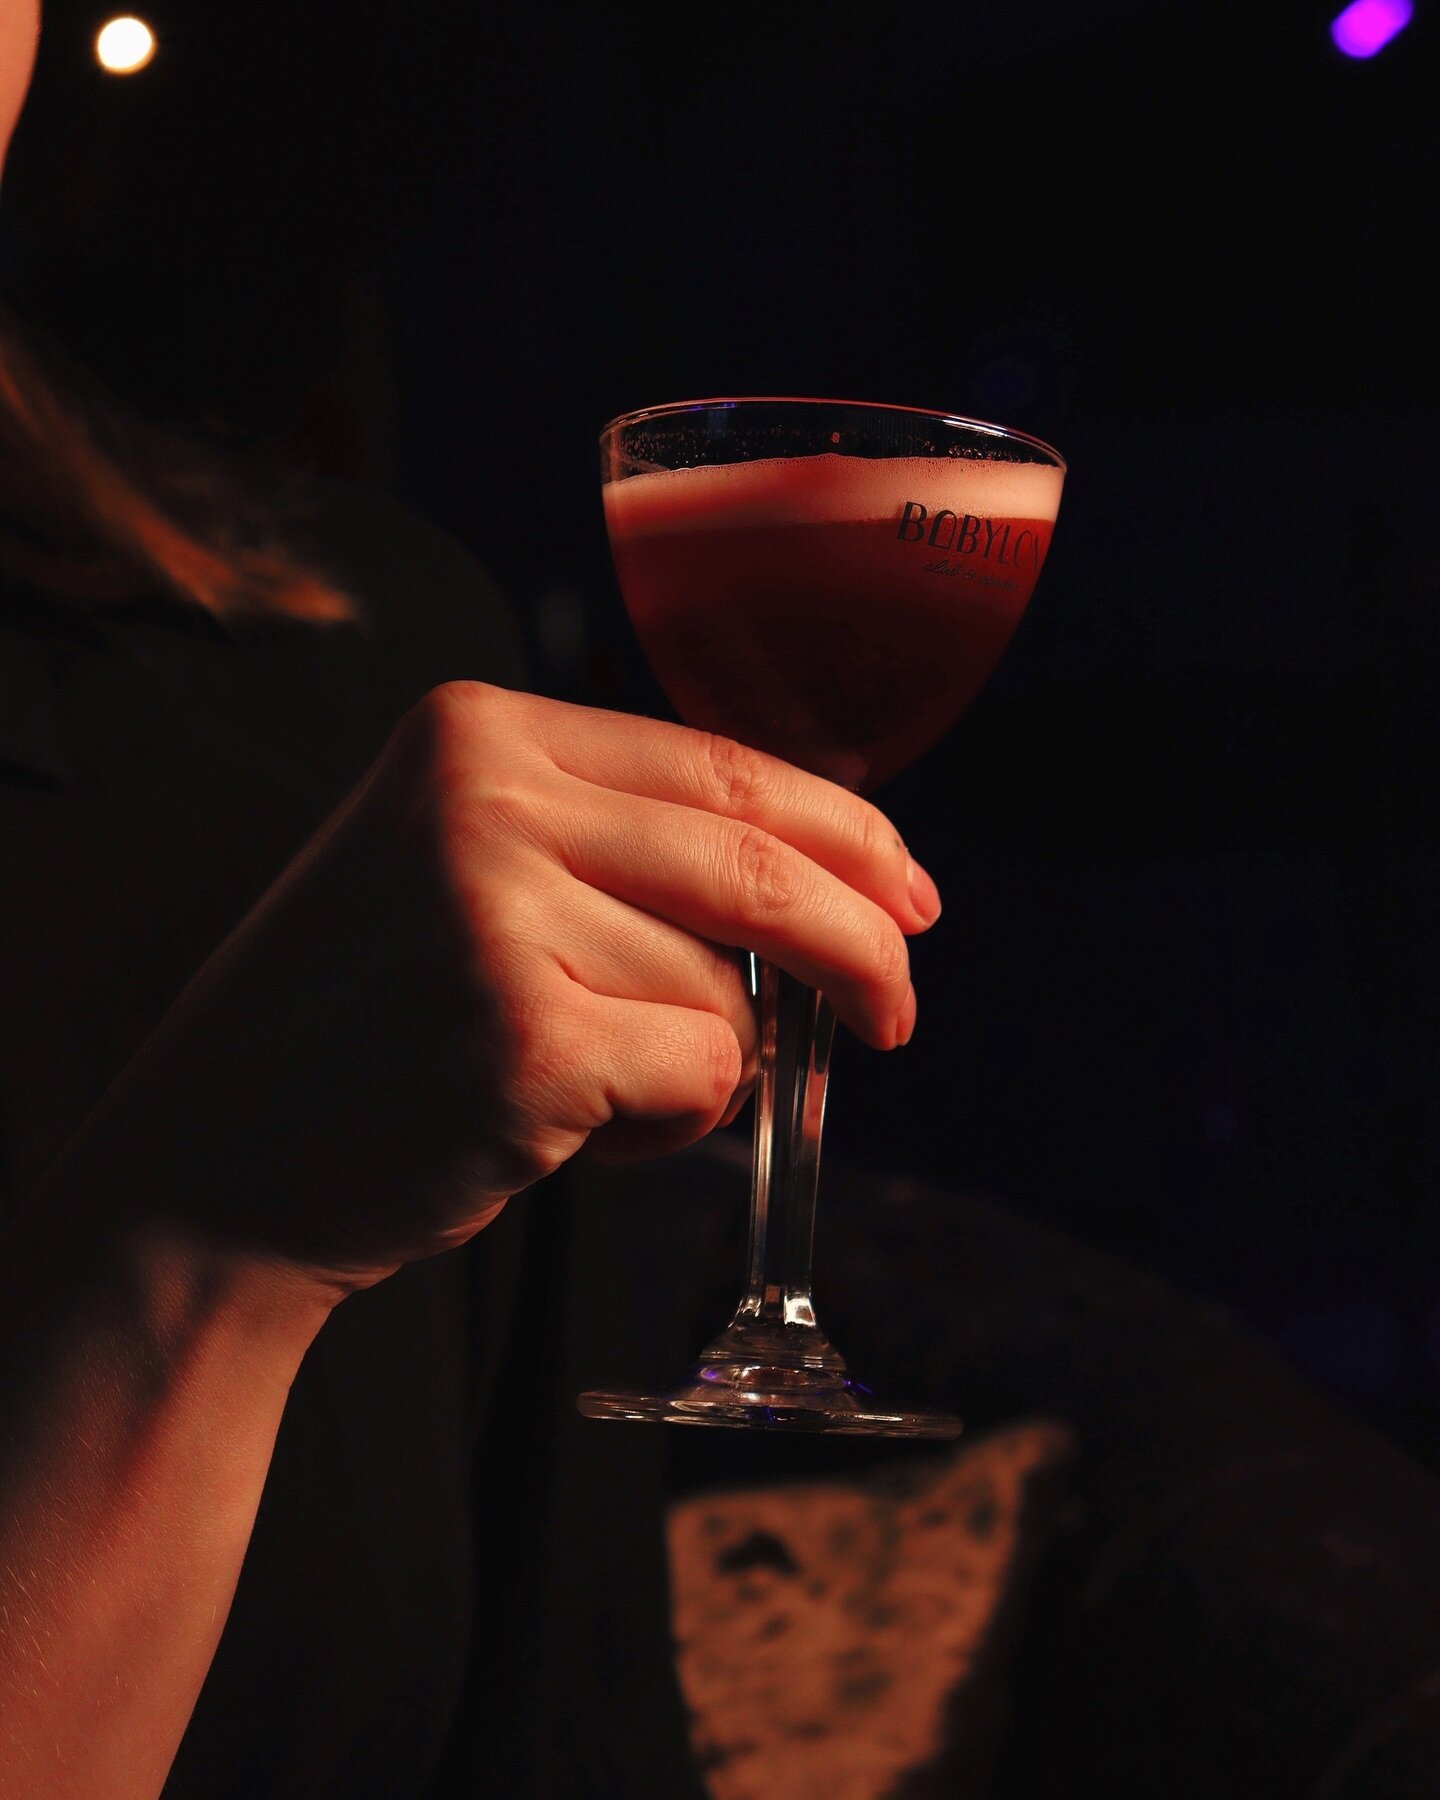 Joko olet l&ouml;yt&auml;nyt suosikki cocktailisi listaltamme? 🍸

#babylonclubandgarden #helsinkibar #cocktailbar #cocktails #nightclub #myhelsinki #visithelsinki #erottaja #erottaja2